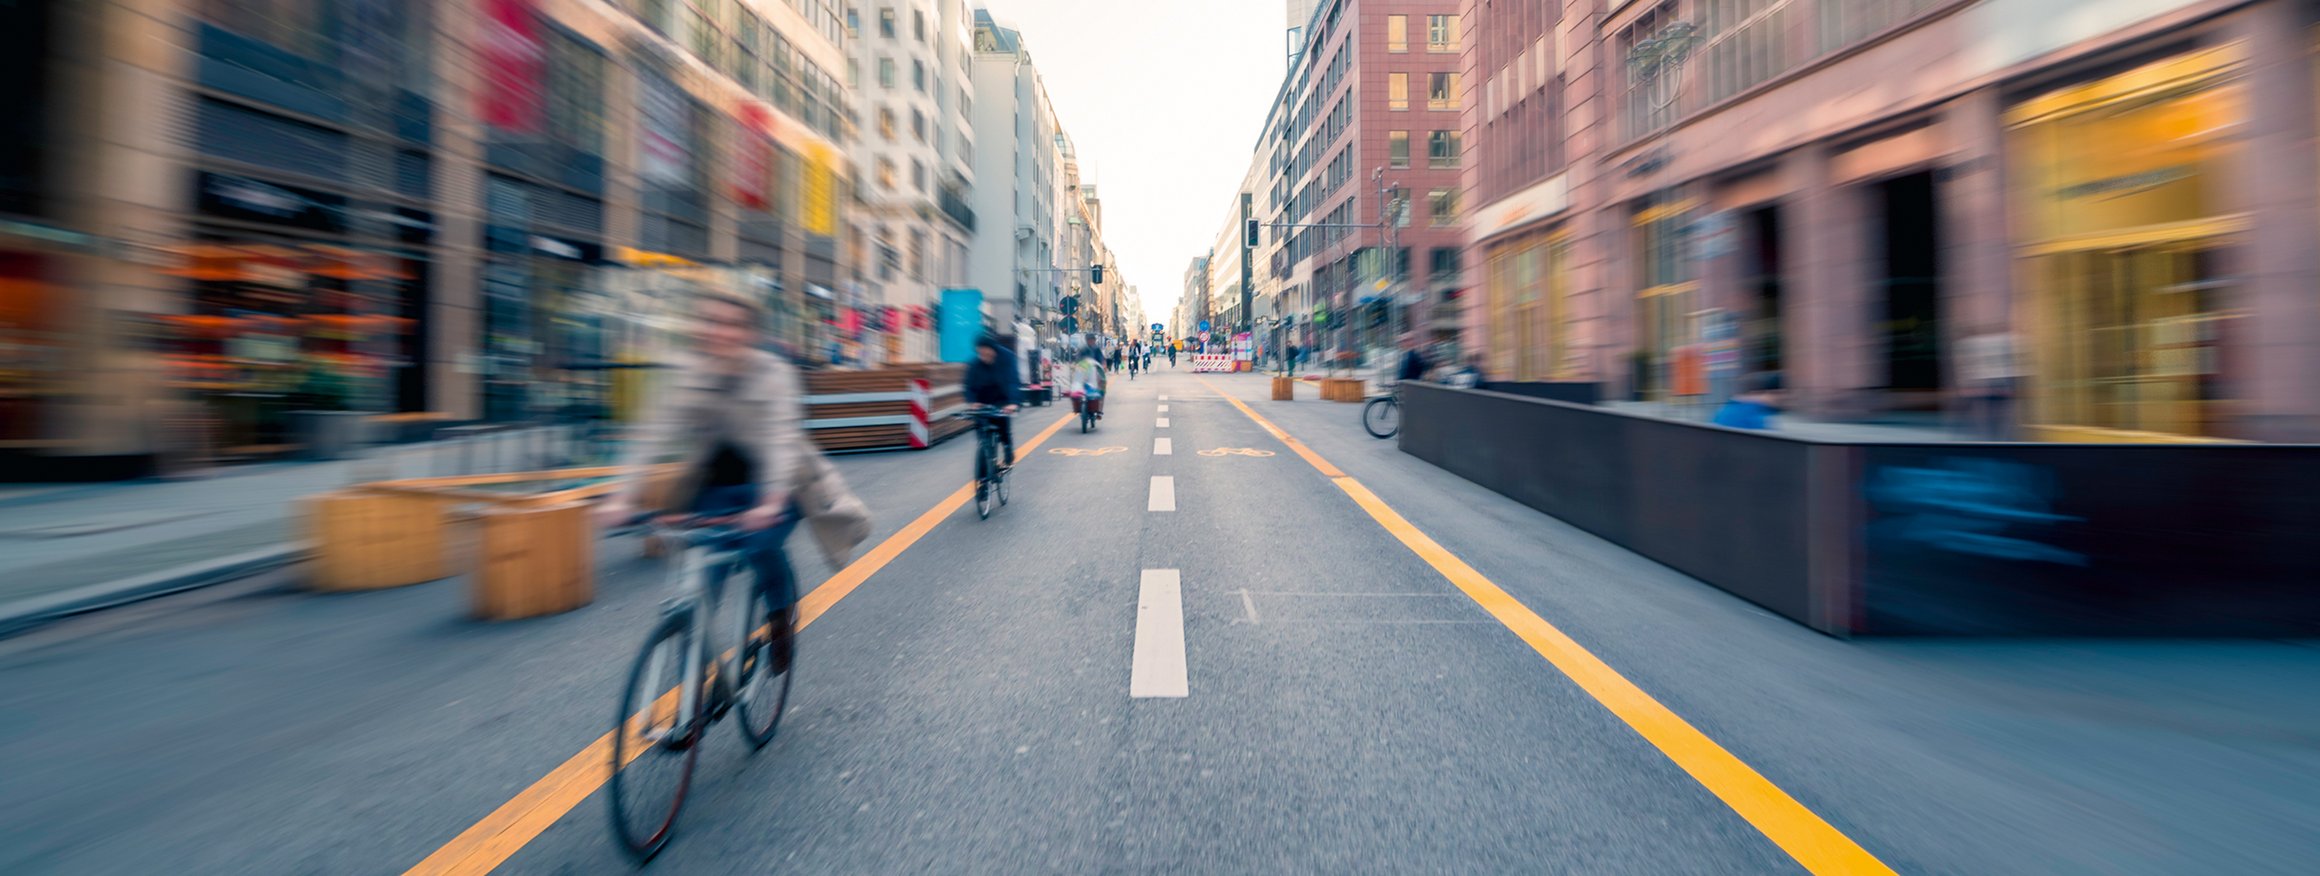 Radfahrer fahren in einer Stadt auf einem großen Fahrradweg